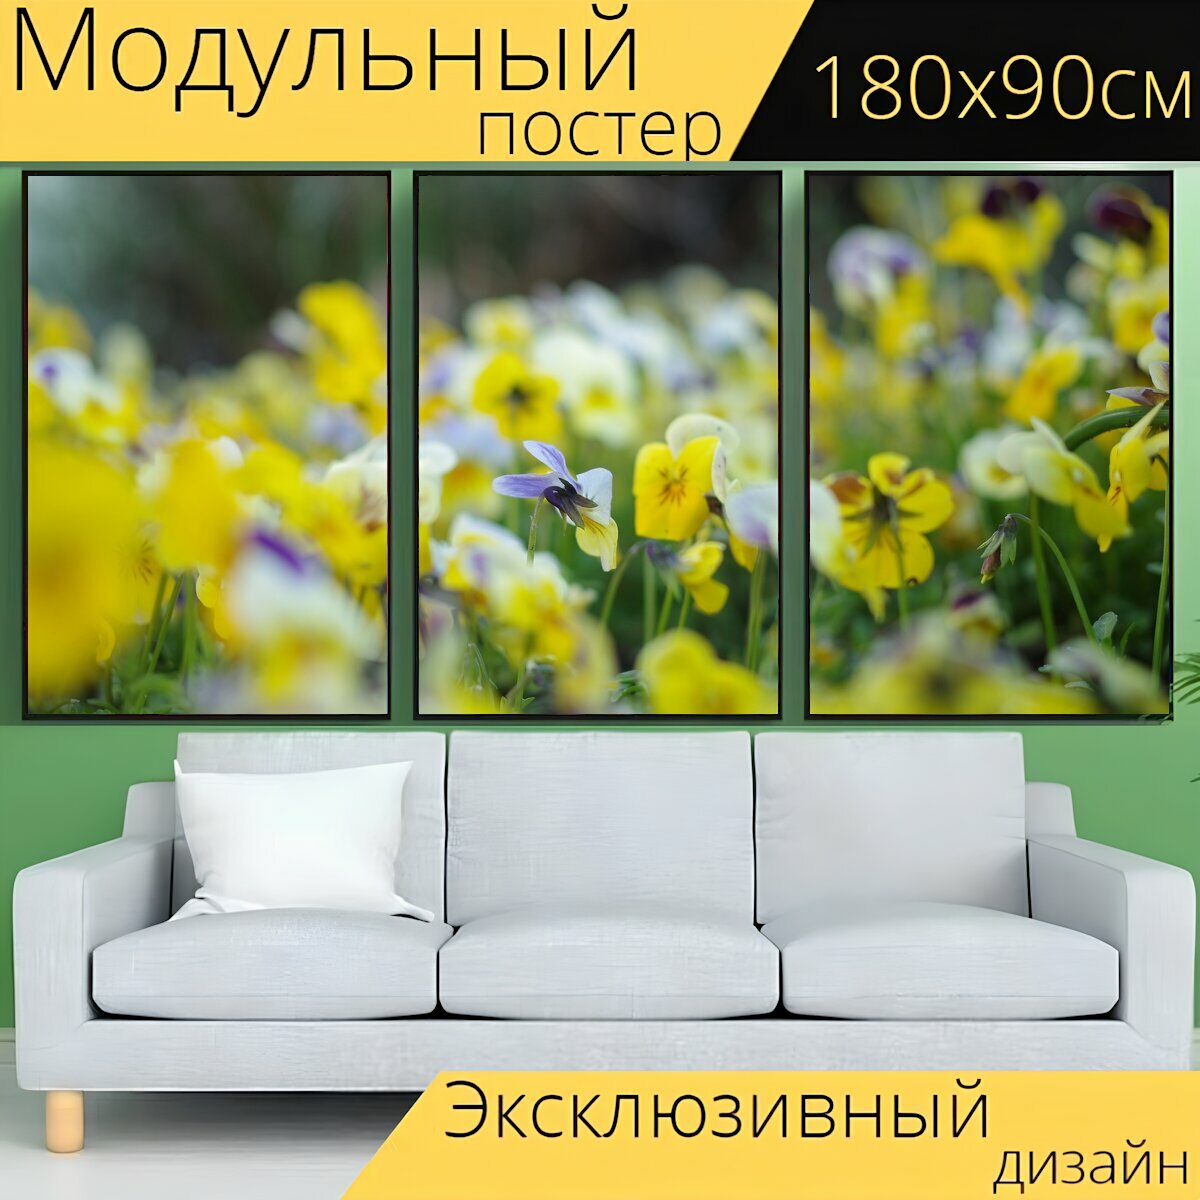 Модульный постер "Цветы, яркий, желтый" 180 x 90 см. для интерьера